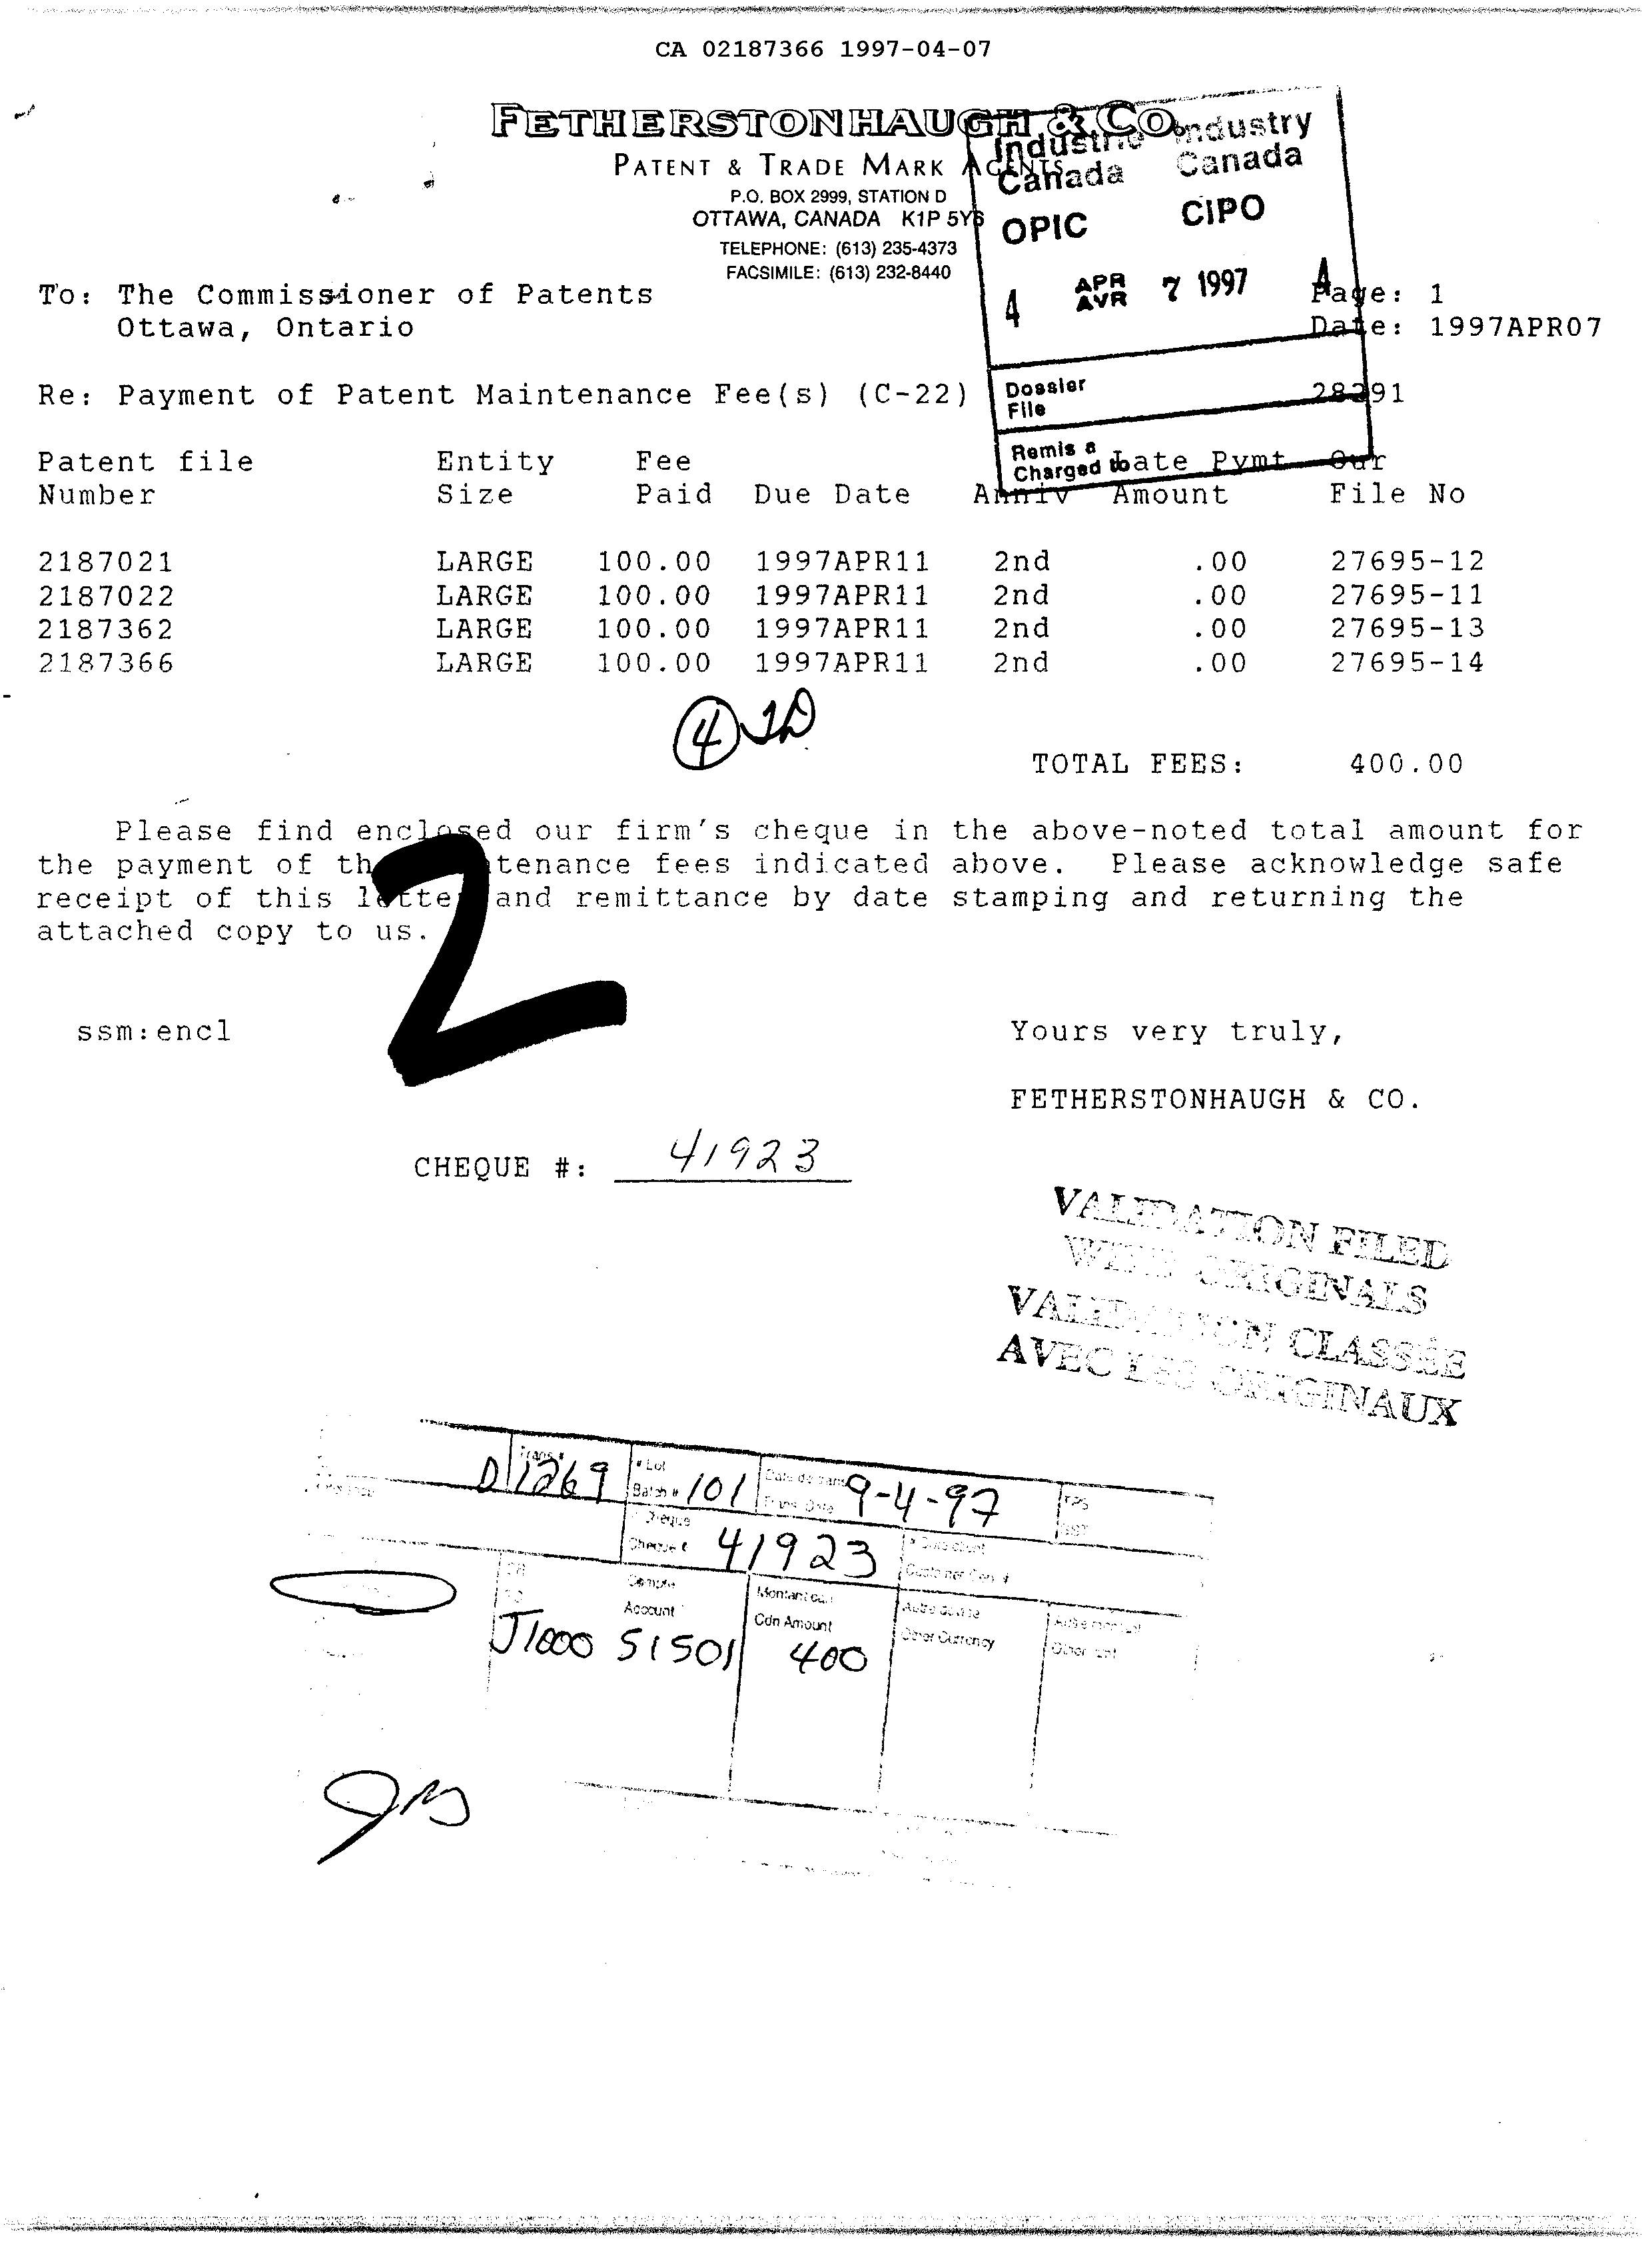 Document de brevet canadien 2187366. Taxes 19961207. Image 1 de 1